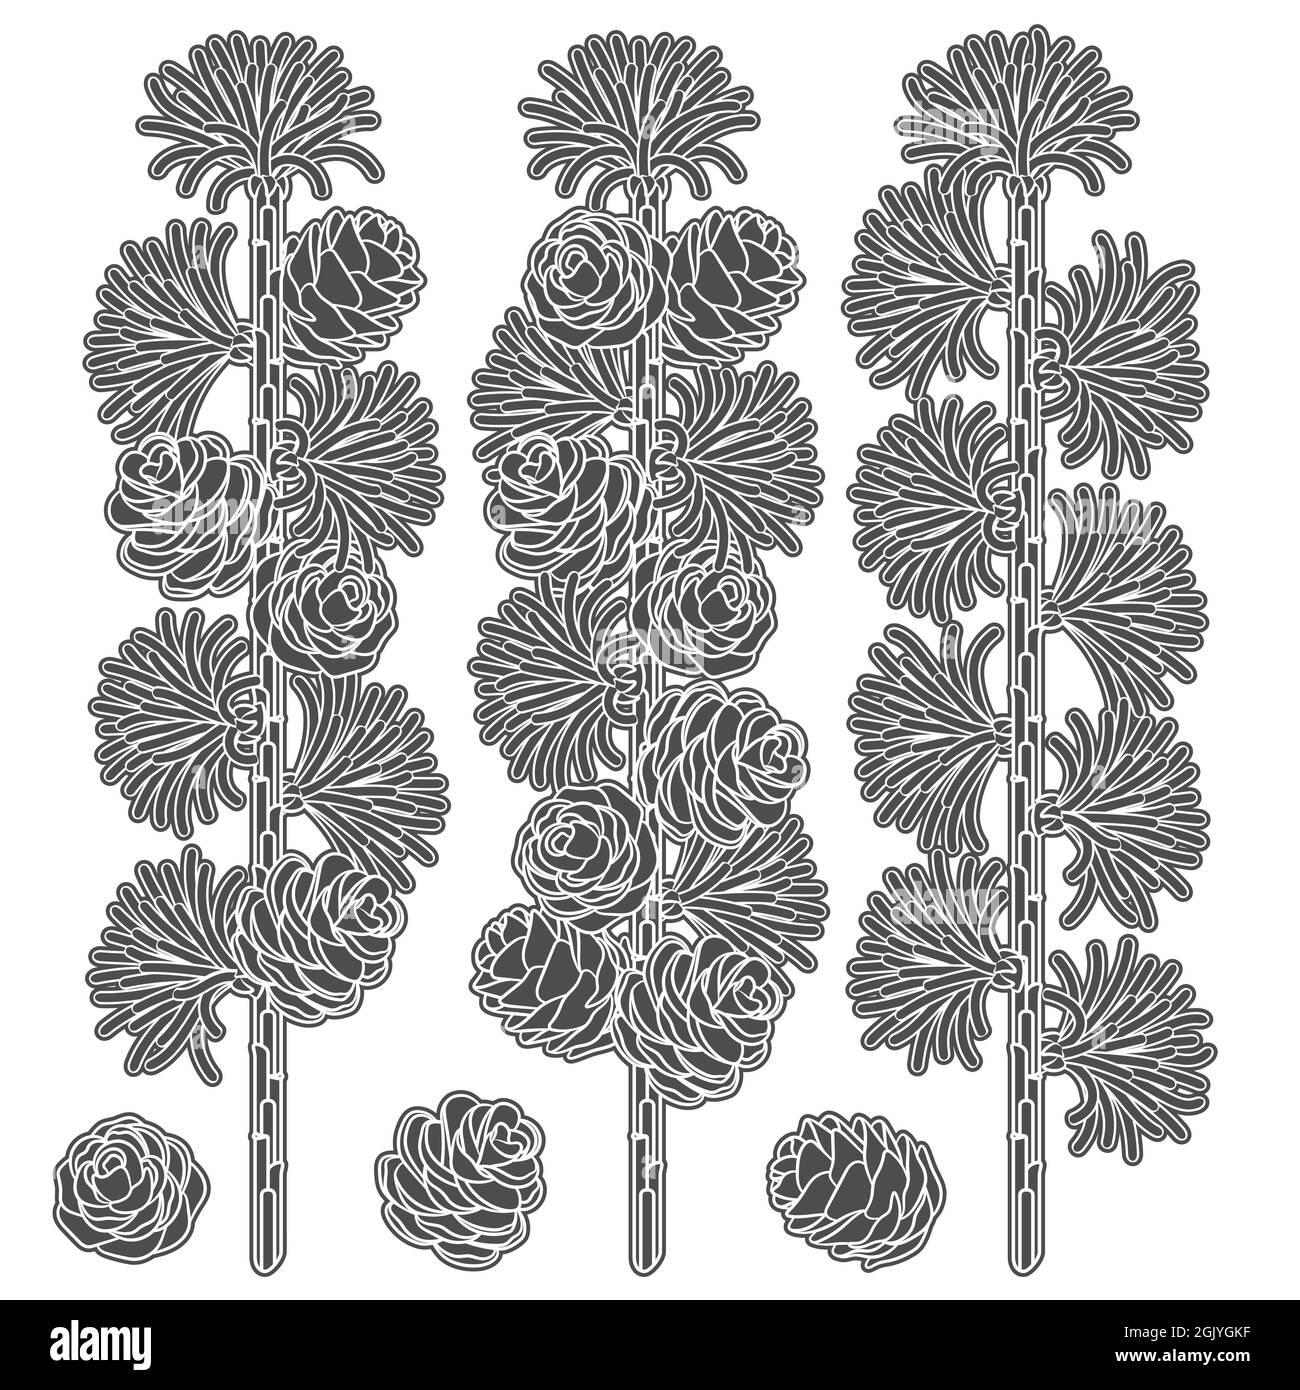 Set di immagini in bianco e nero di rami e coni di larice. Oggetti vettoriali isolati su sfondo bianco. Illustrazione Vettoriale